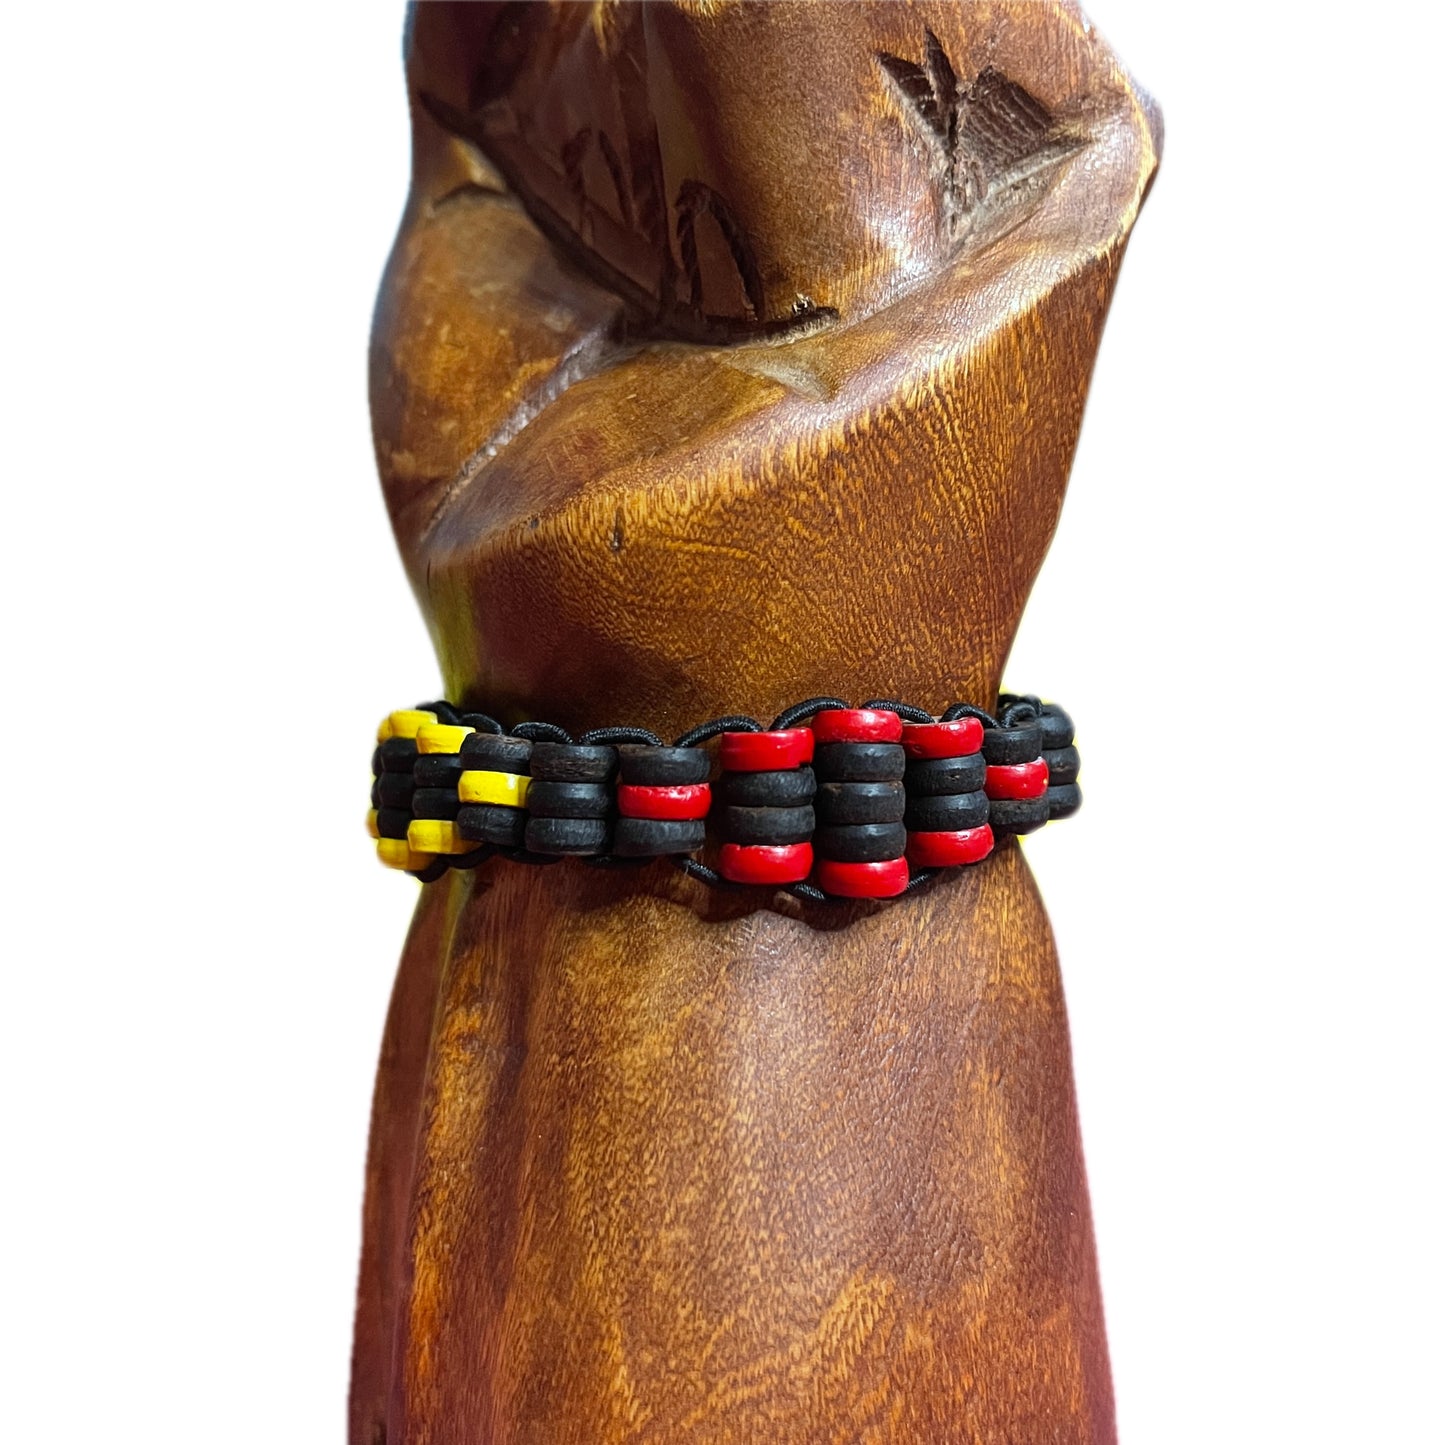 Rasta Bracelet “All Seeing Eye” Black Coconut Islander Tribal Stretch Cuff